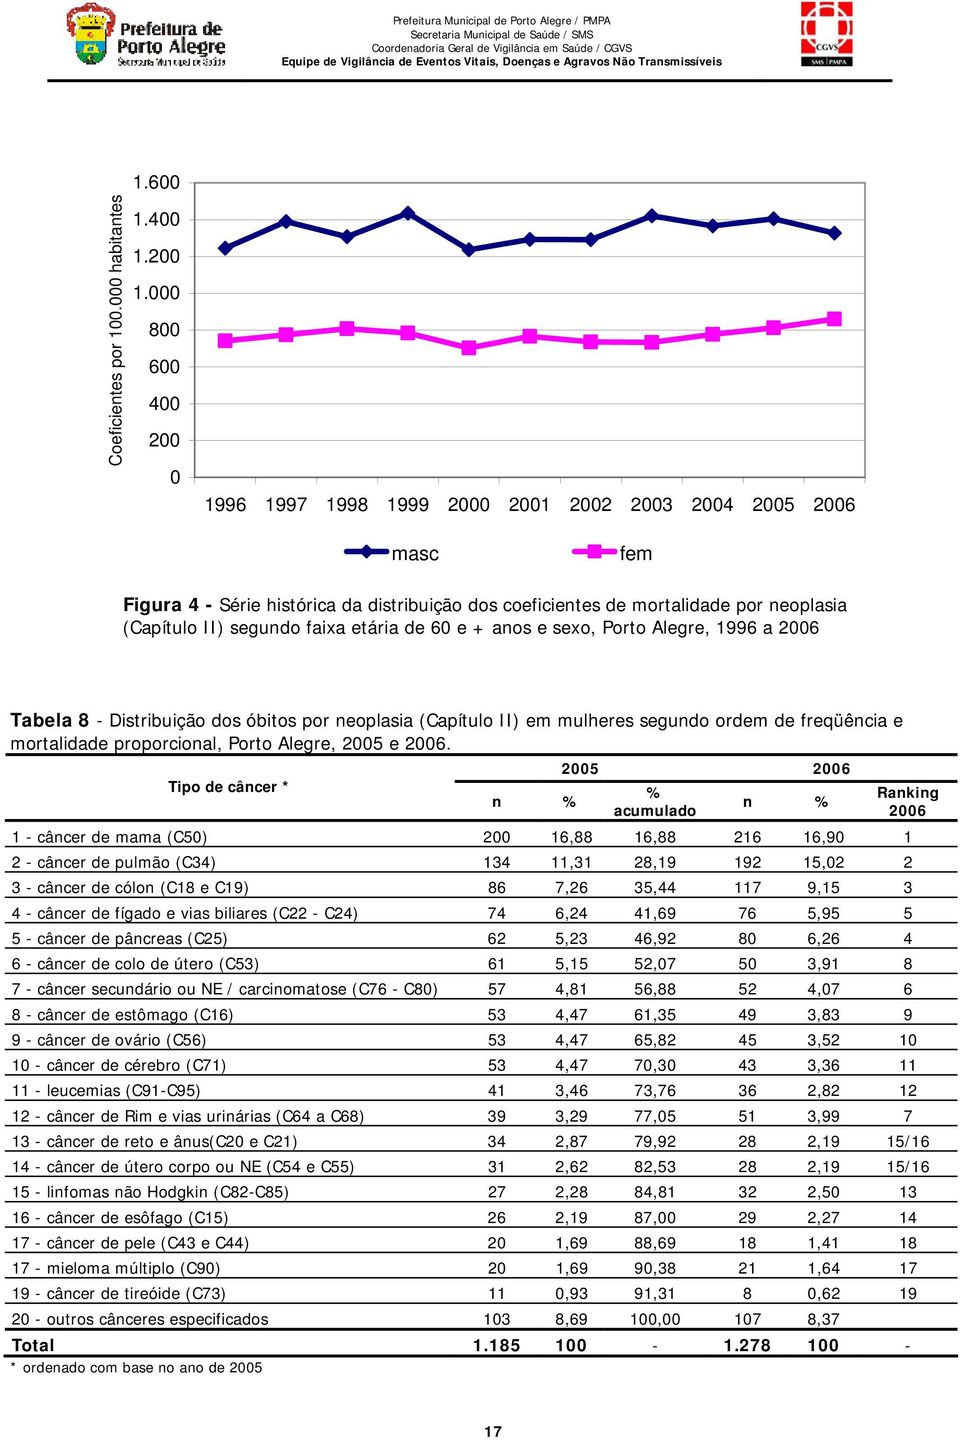 2006 Tabela 8 - Distribuição dos óbitos por neoplasia (Capítulo II) em mulheres segundo ordem de freqüência e mortalidade proporcional, Porto Alegre, 2005 e 2006.